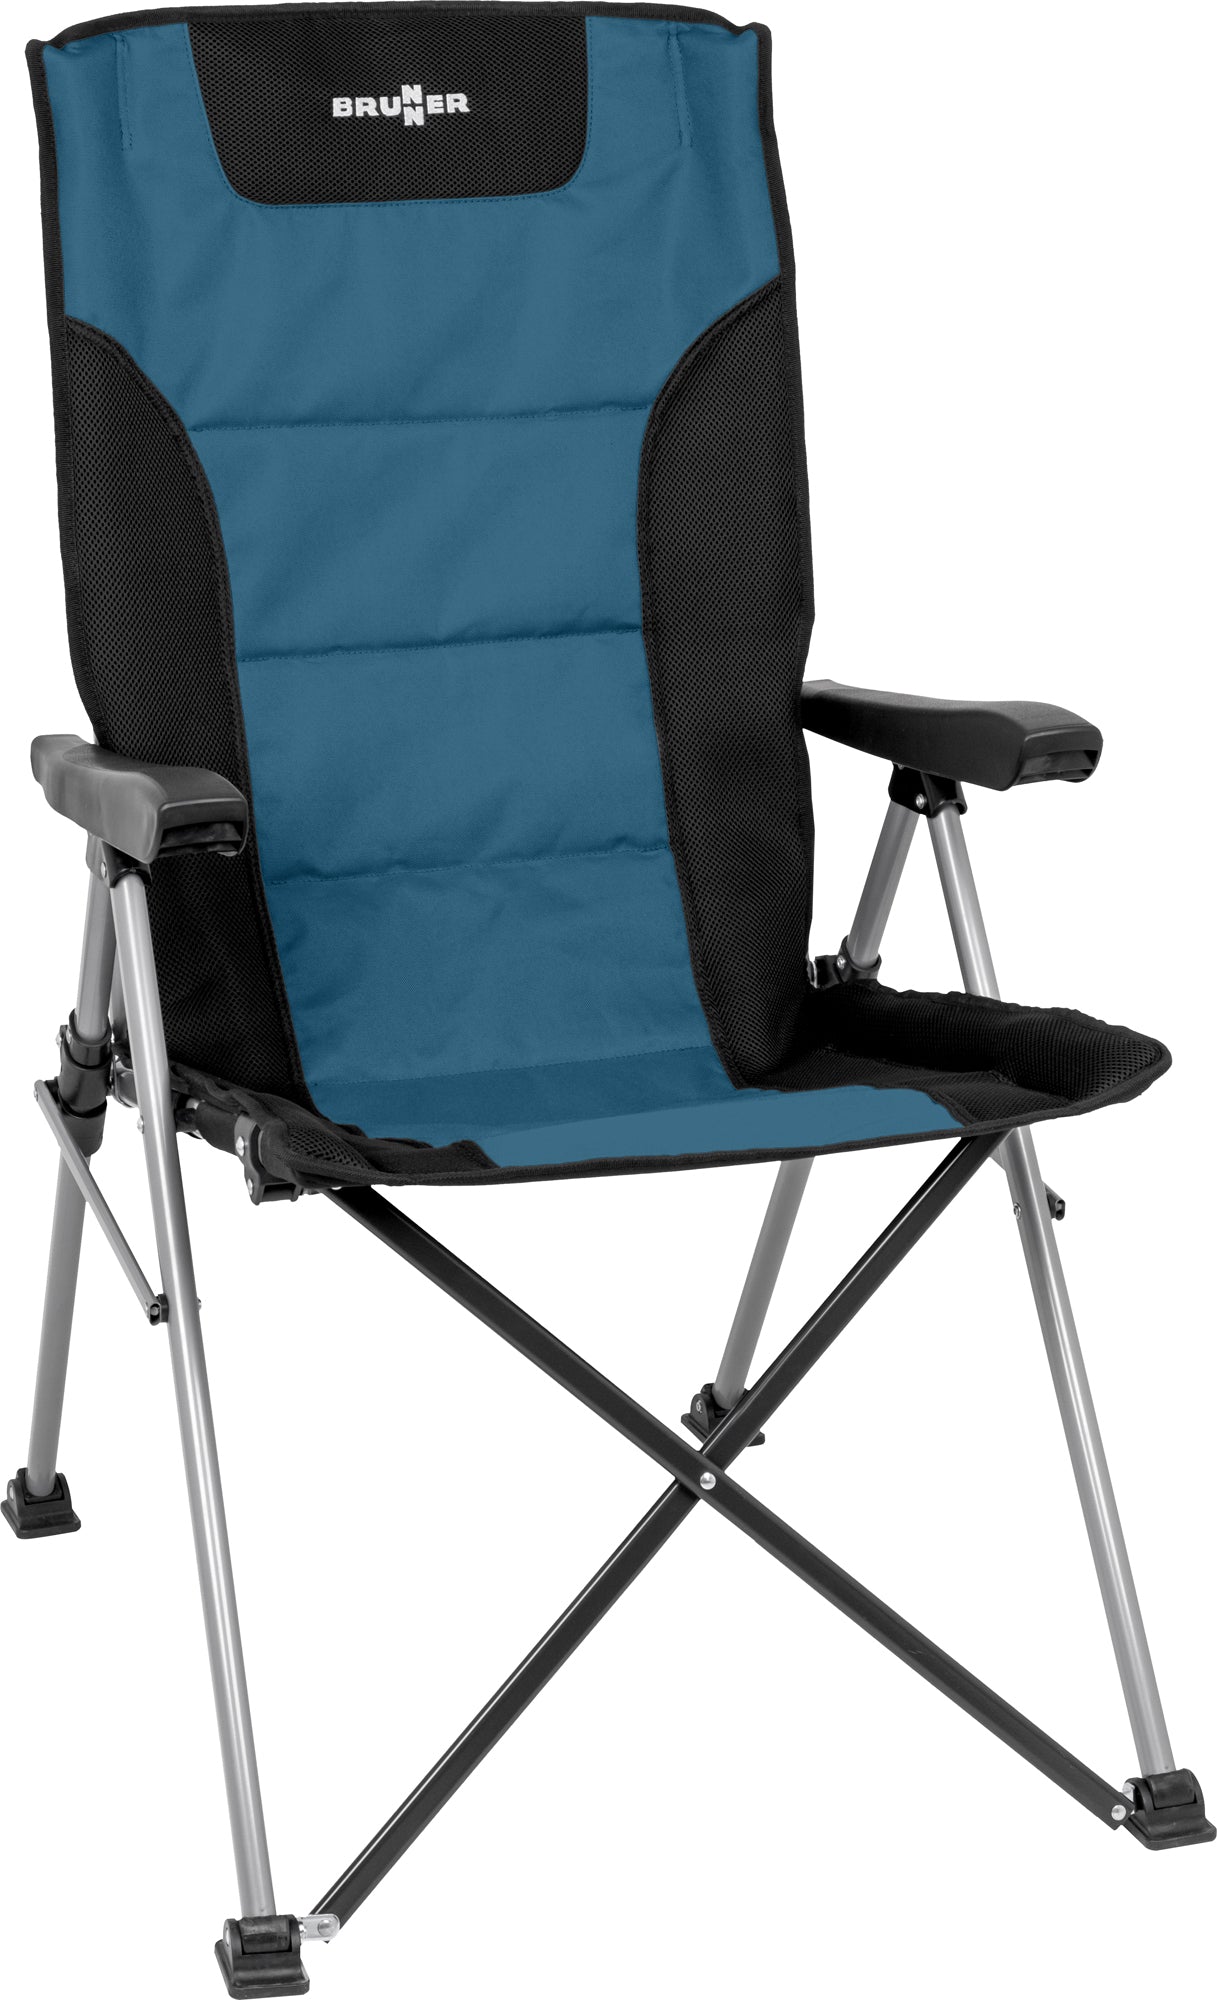 Качествен сгъваем стол за къмпинг лесно преносим и удобен, здрава конструкция. Висока облегалка и наклон.High quality folding chair for camping, compact folded size. Strong and tough reliable.